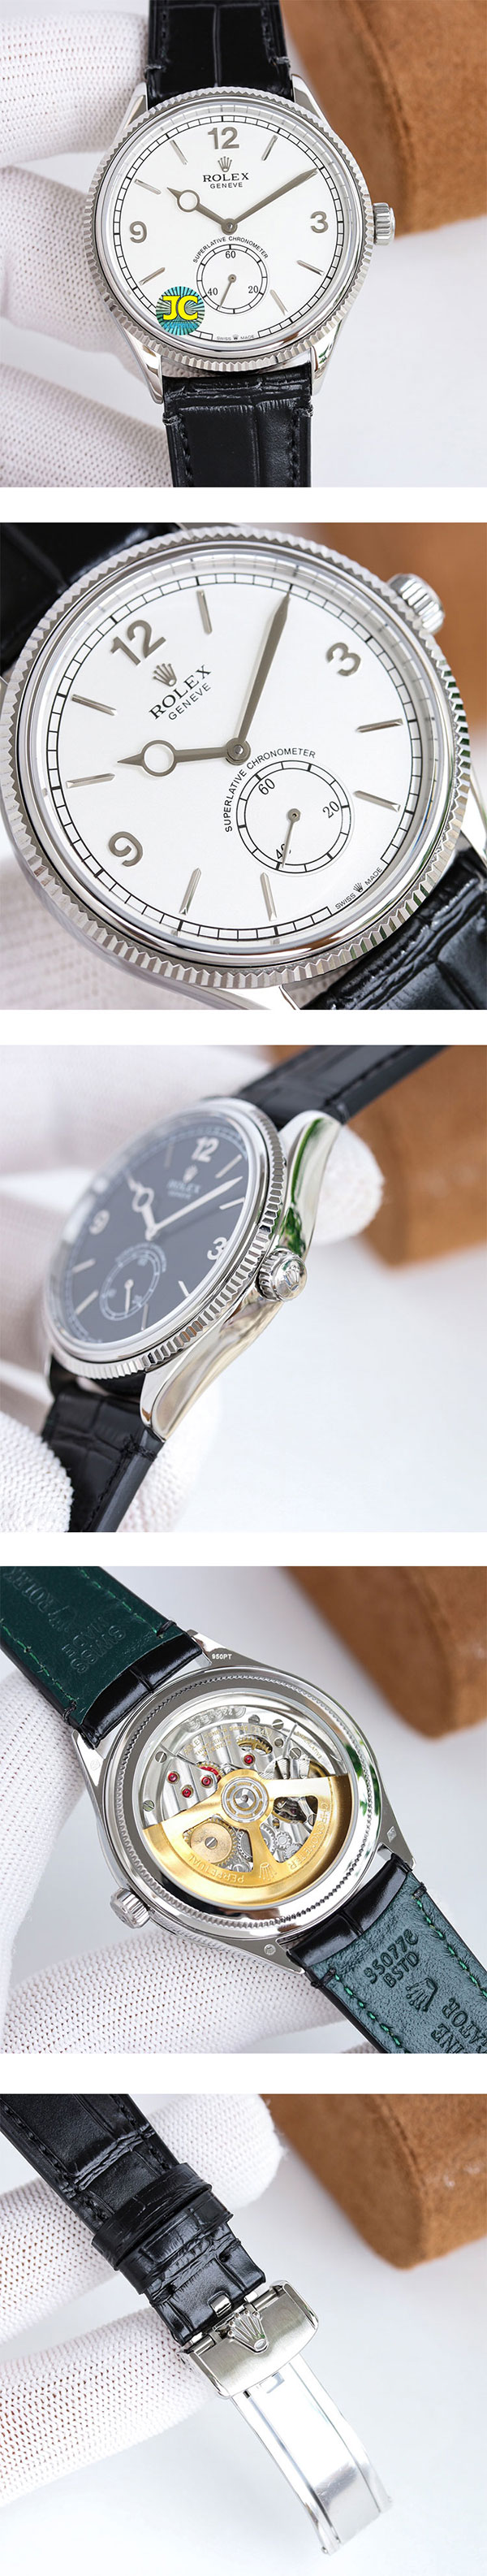 【激安腕時計挑戦】【39mm 】ロレックス パーペチュアル1908  M52509-0006コピー時計 